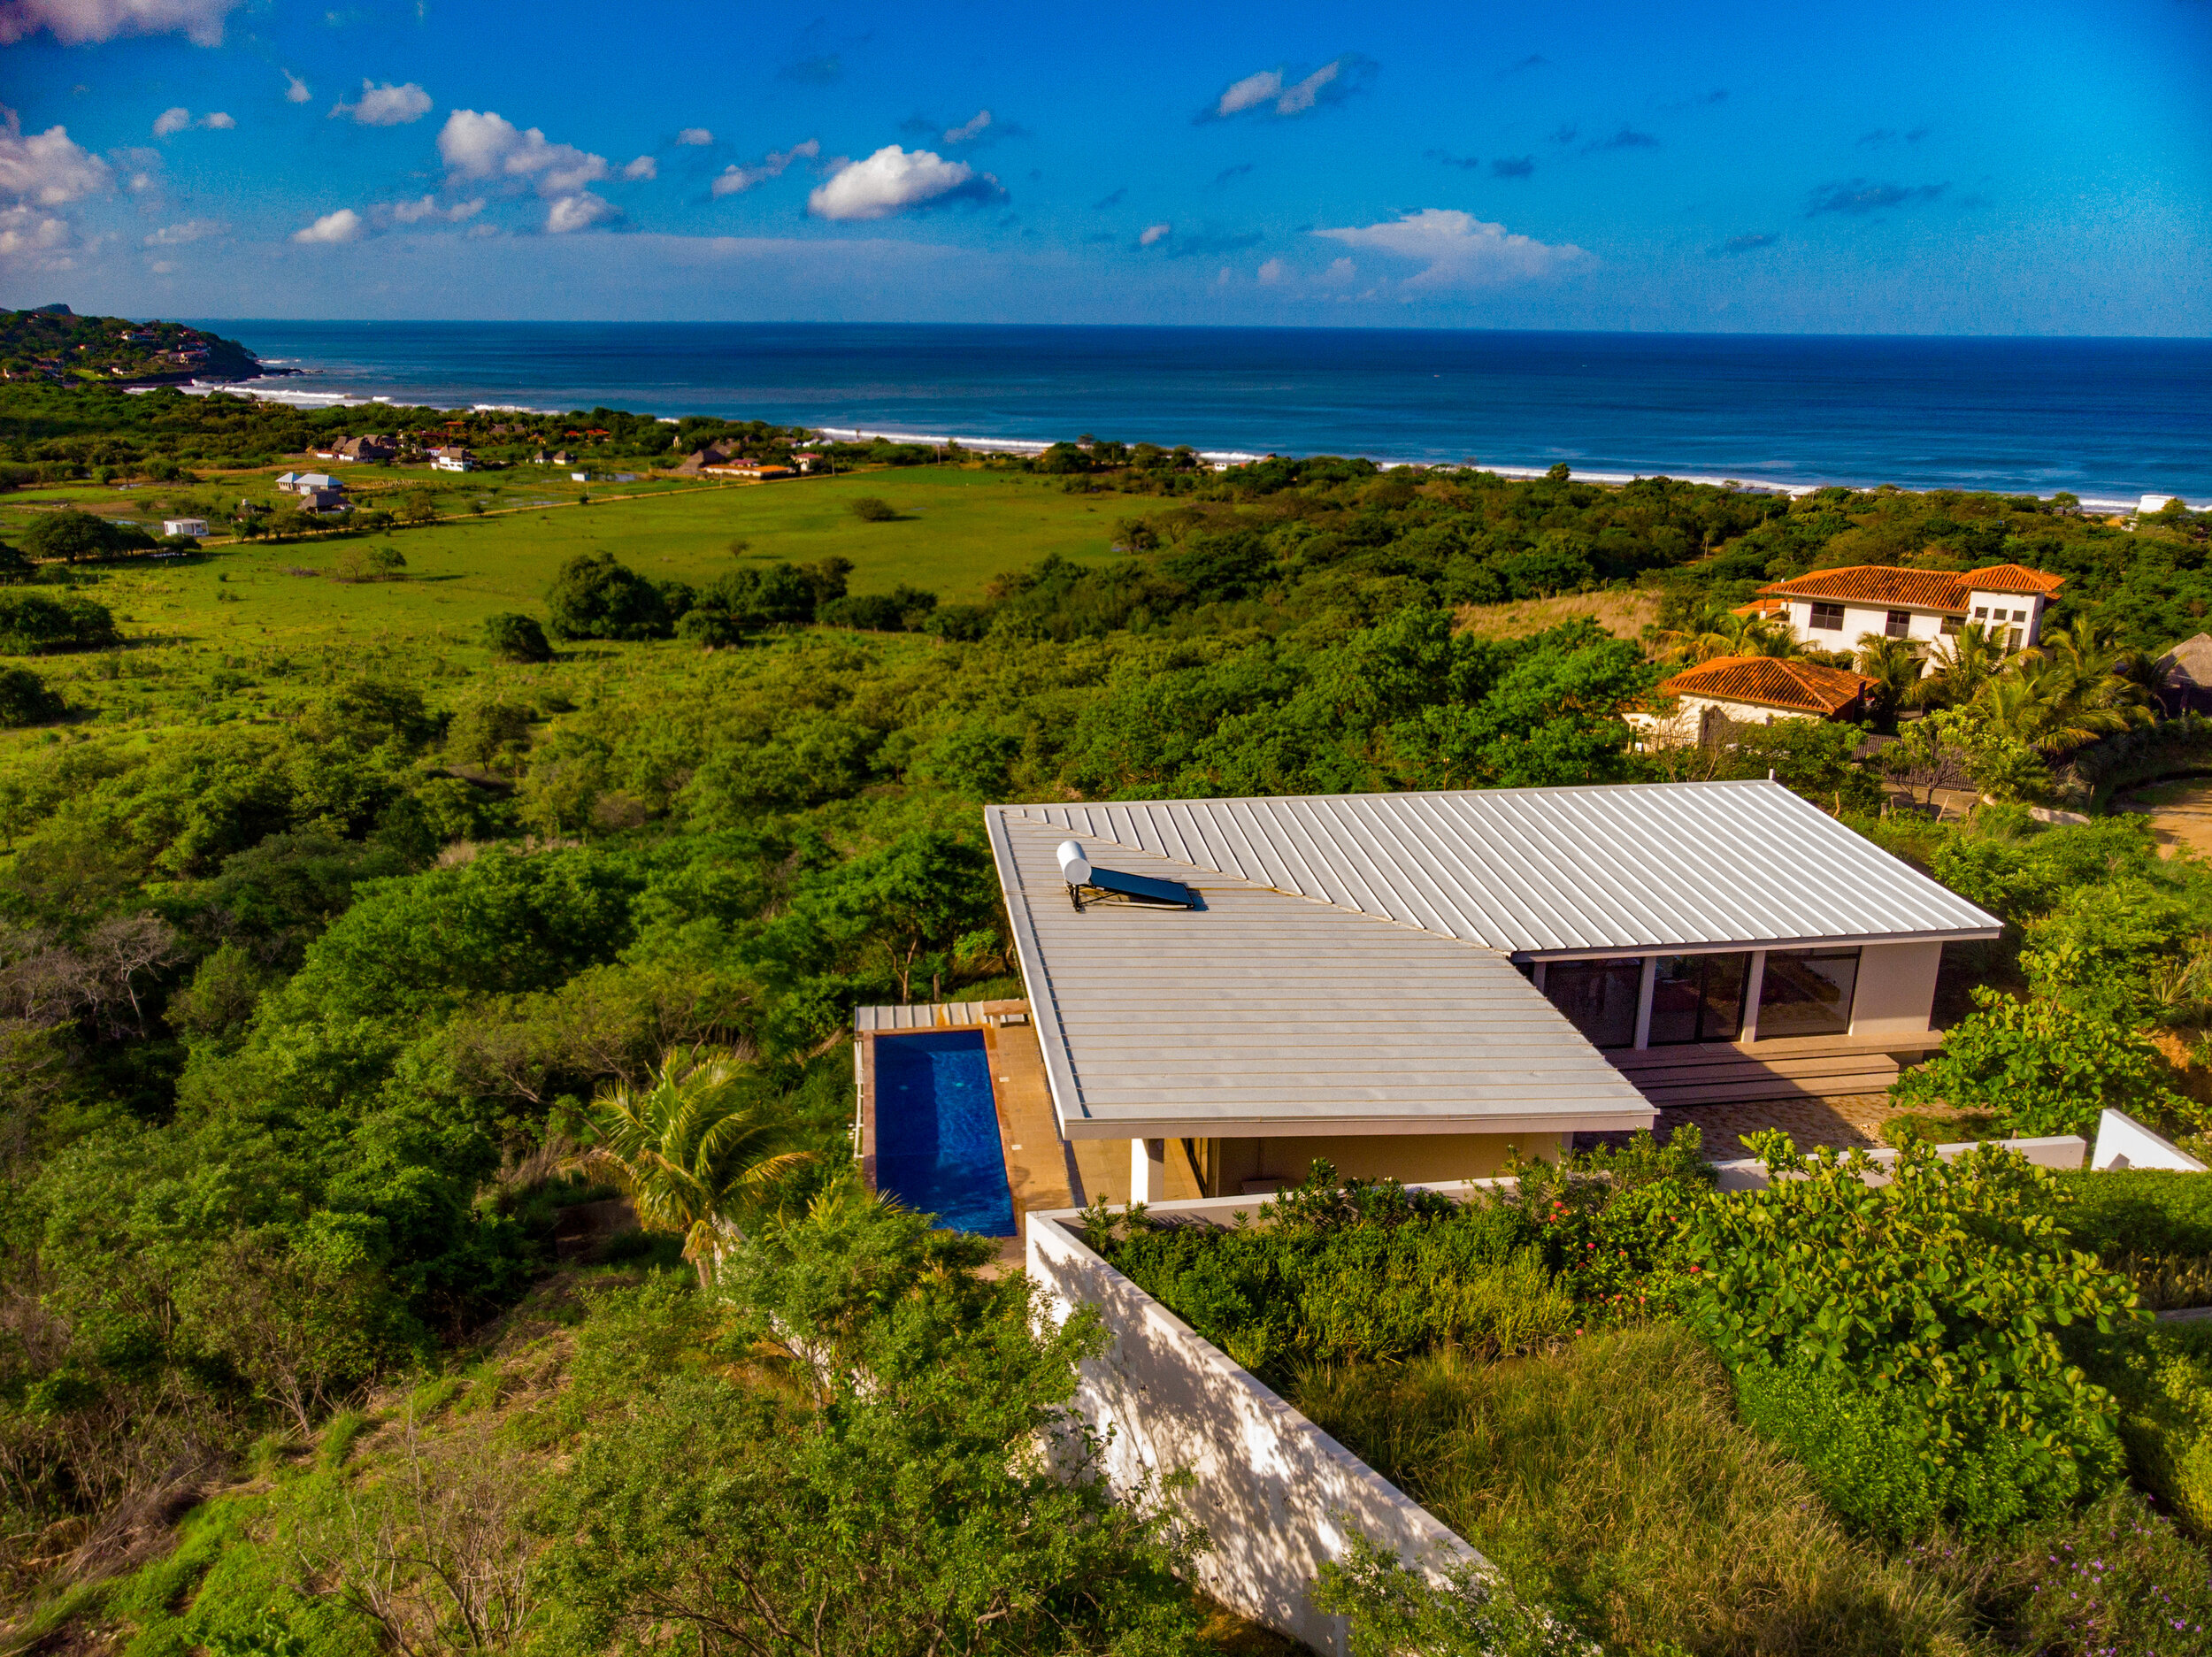 Real Estate For Sale Nicaragua Playa Santana 11.JPEG